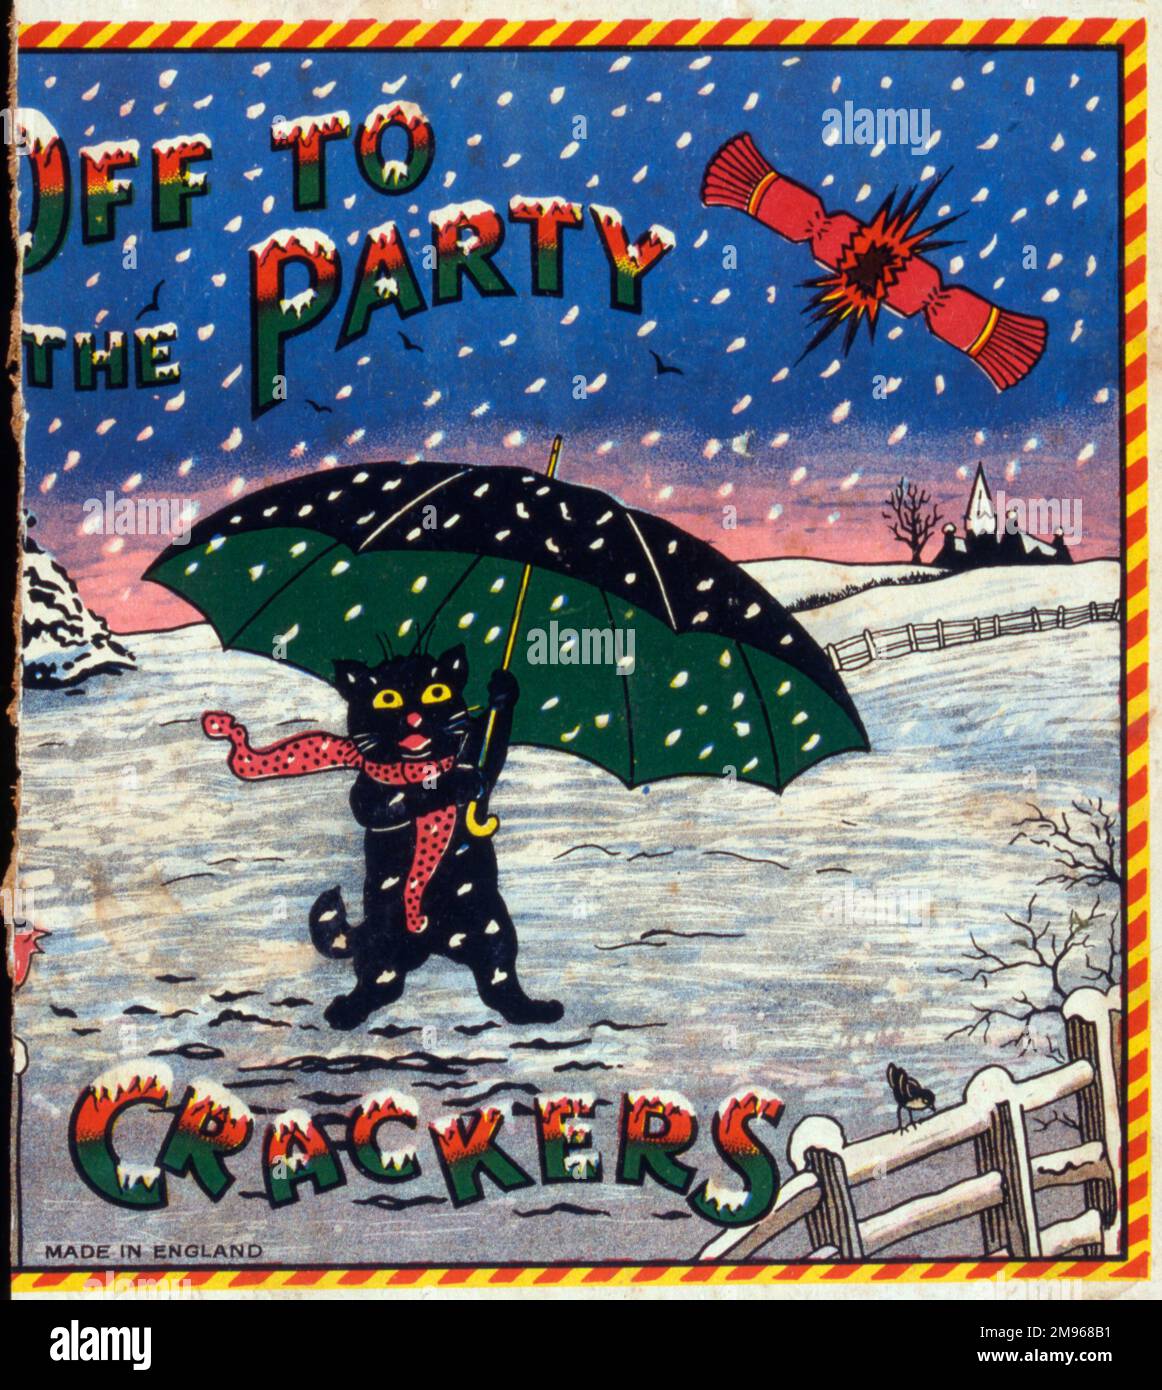 Ein süßes Design für ein Label auf einer Schachtel mit Weihnachtsknackern – oder „Off to a Party“-Crackern mit einer kleinen schwarzen Katze, die unter einem Schirm aufregend durch den Schnee rast. Stockfoto